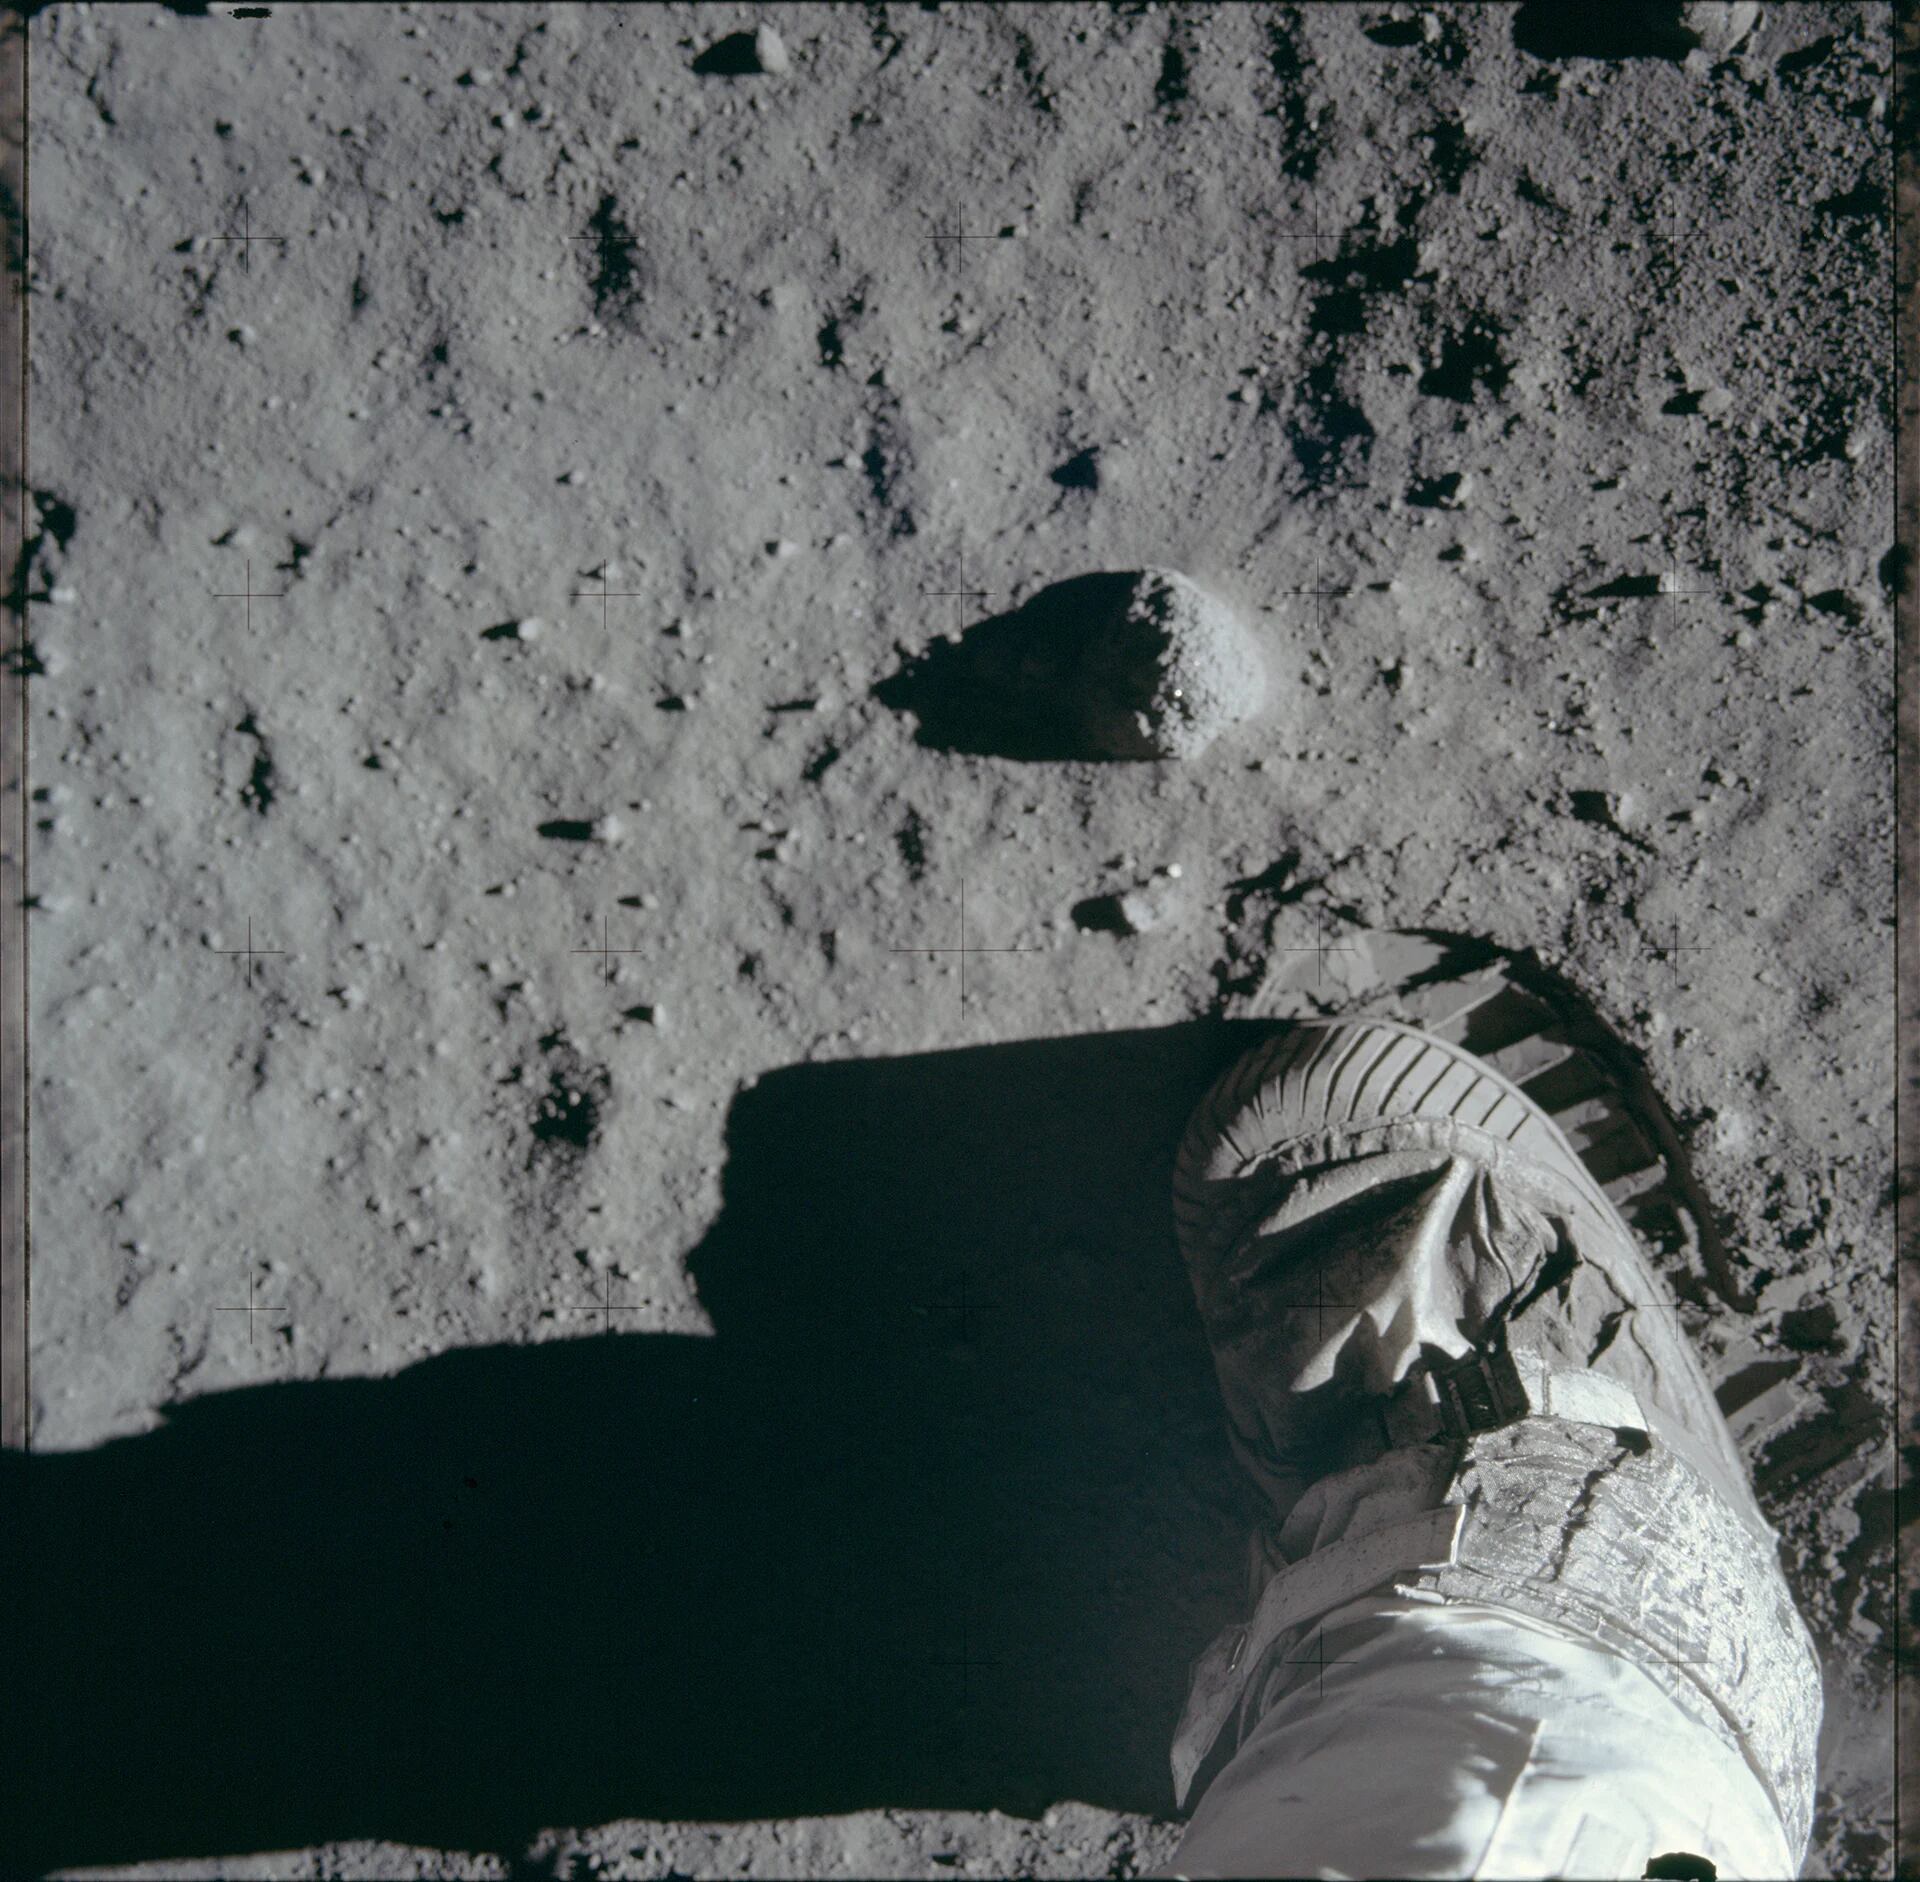 La huella de un astronauta durante la actividad extravehicular en la superficie lunar, 20 de julio de, 1969 (Reuters)